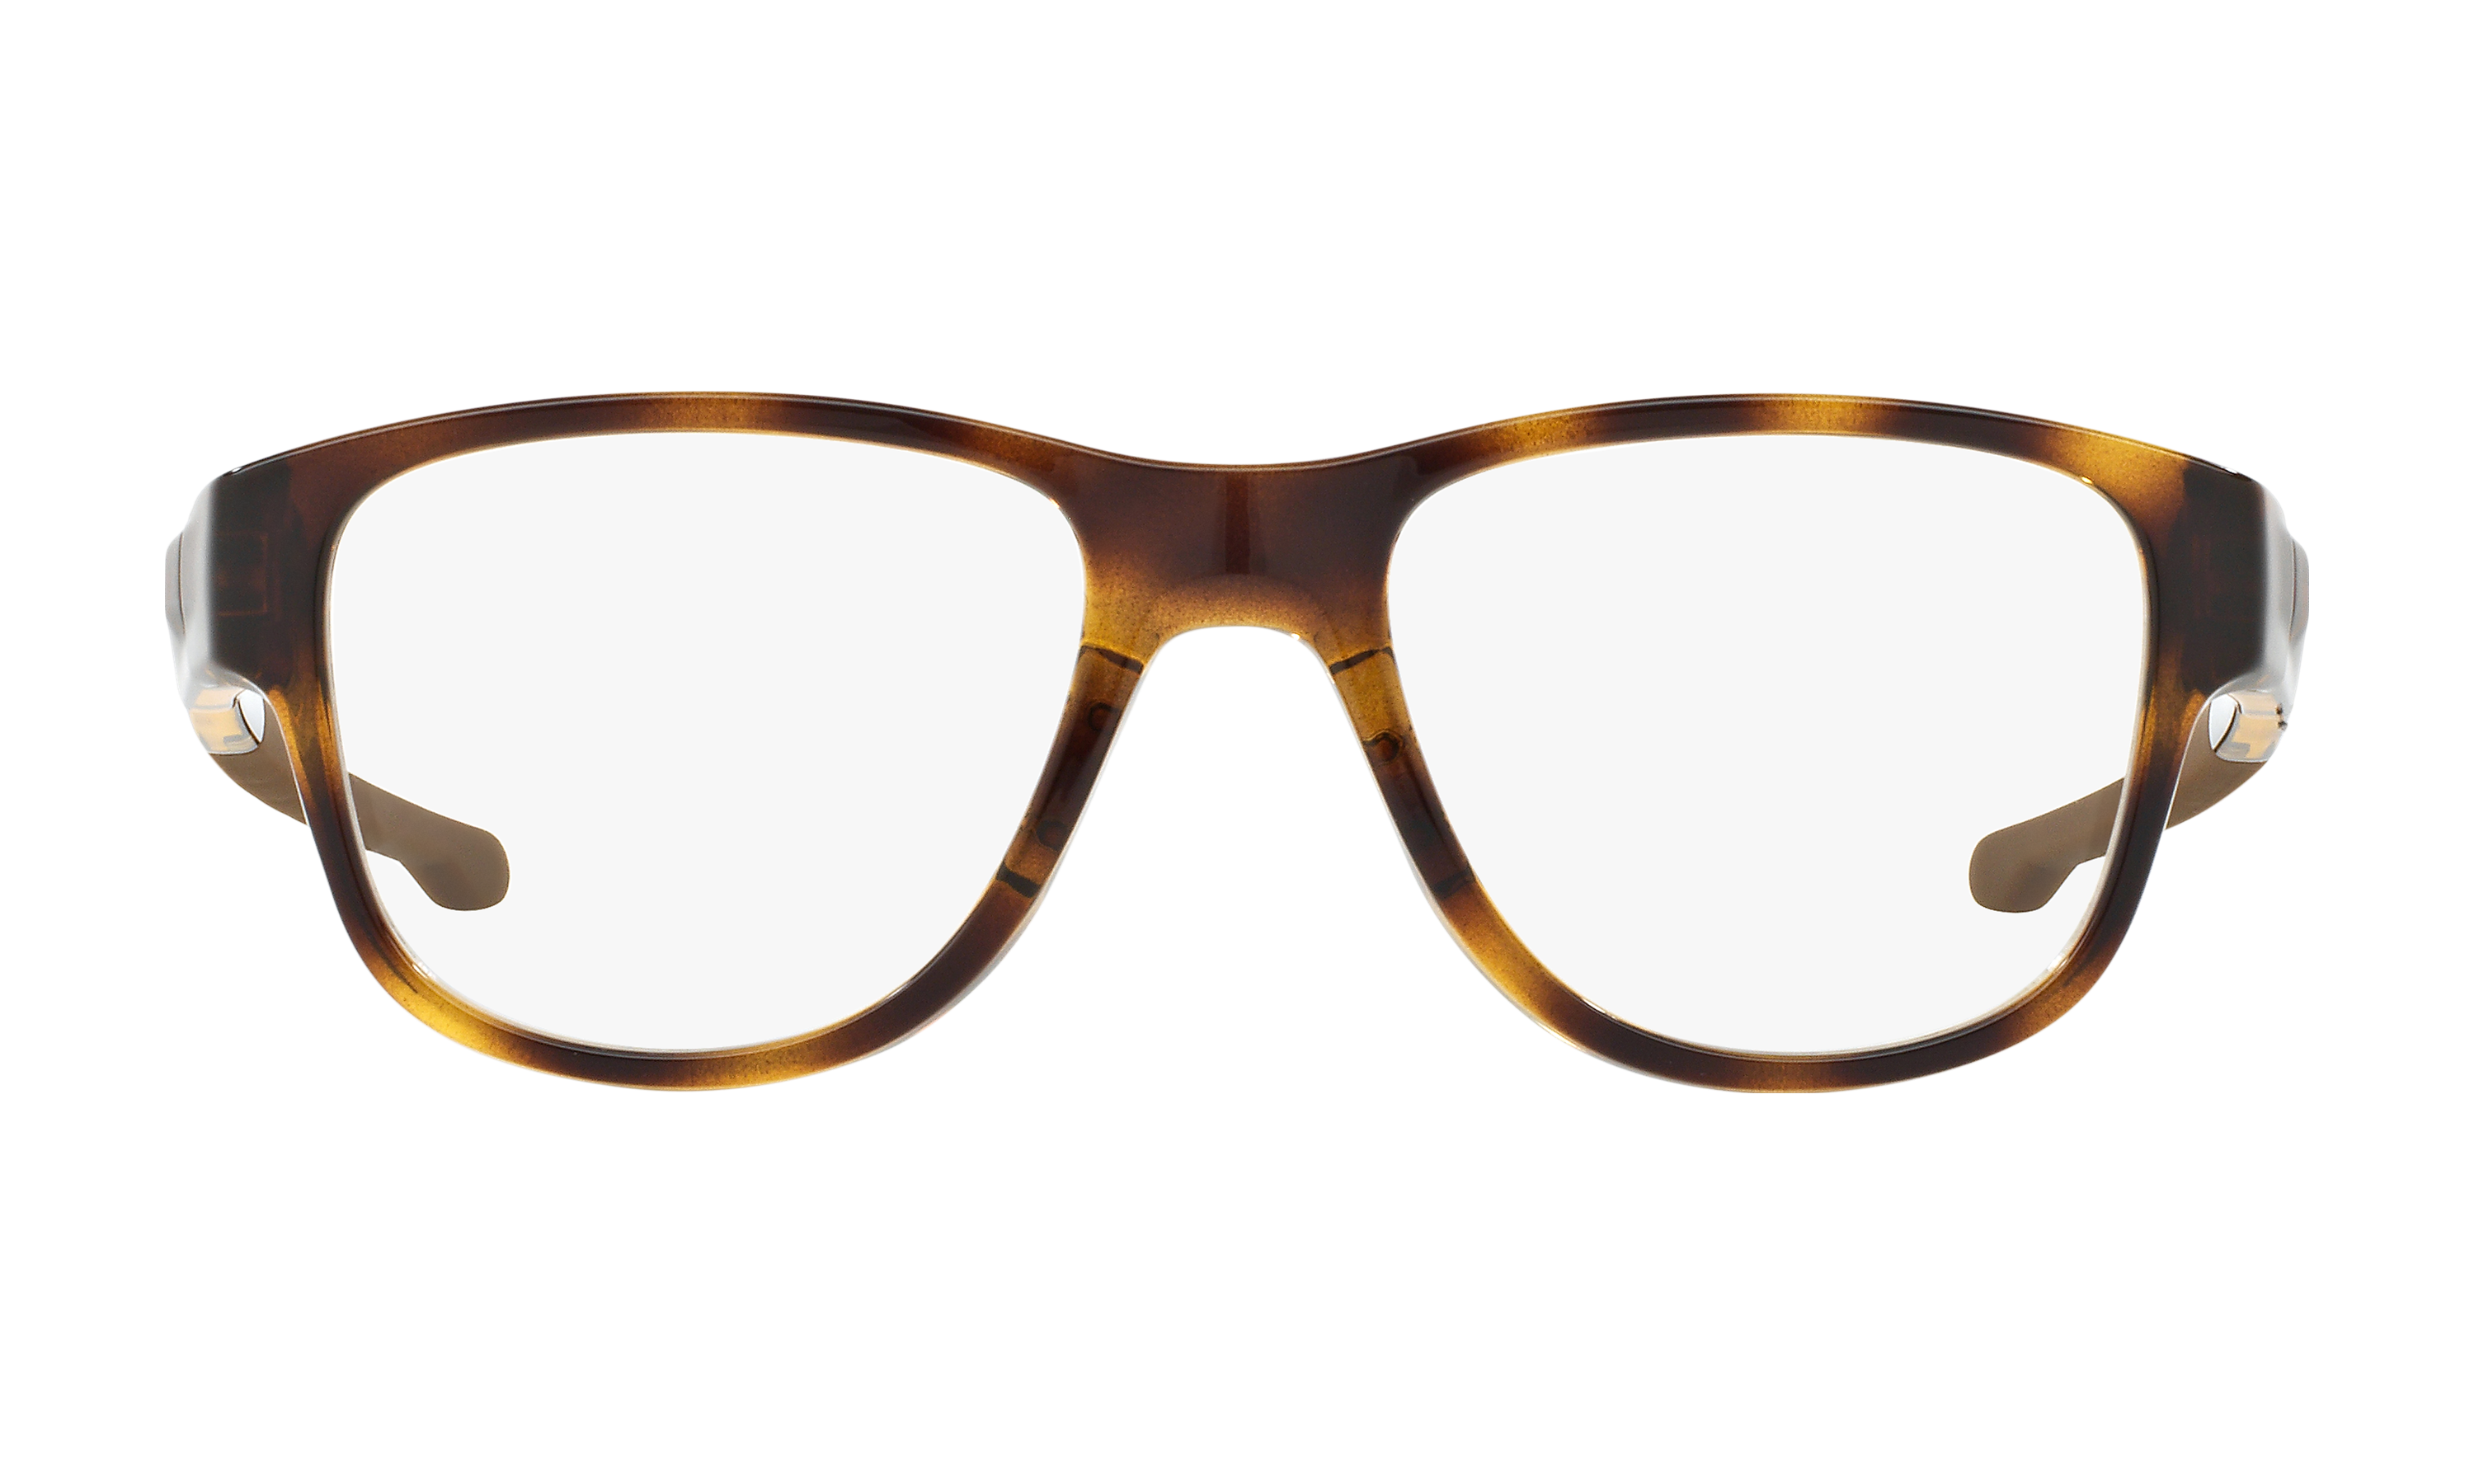 oakley splinter sunglasses